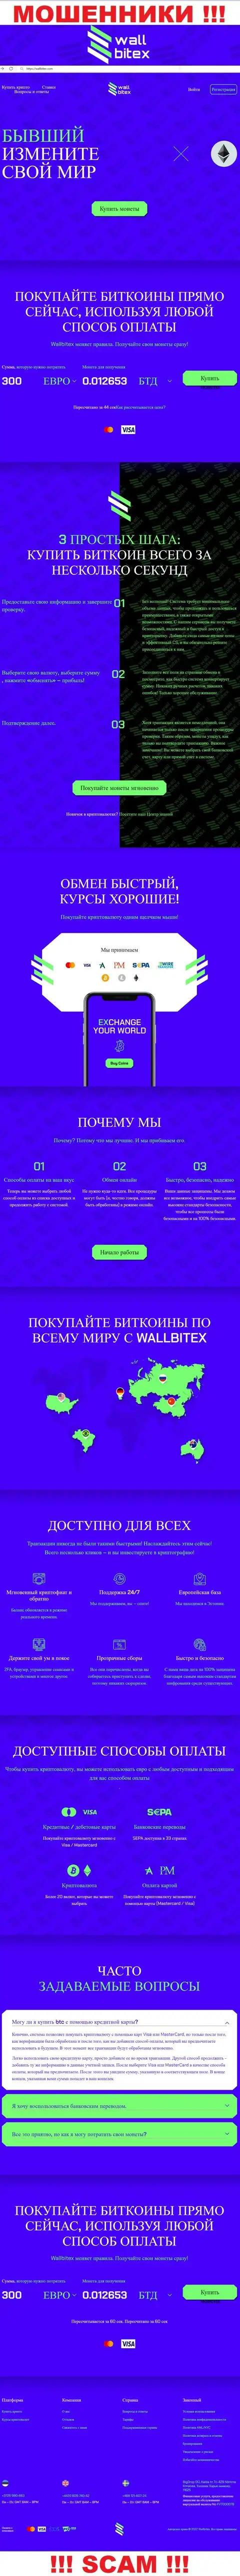 WallBitex Com - это официальный веб-портал противозаконно действующей конторы Валл Битекс